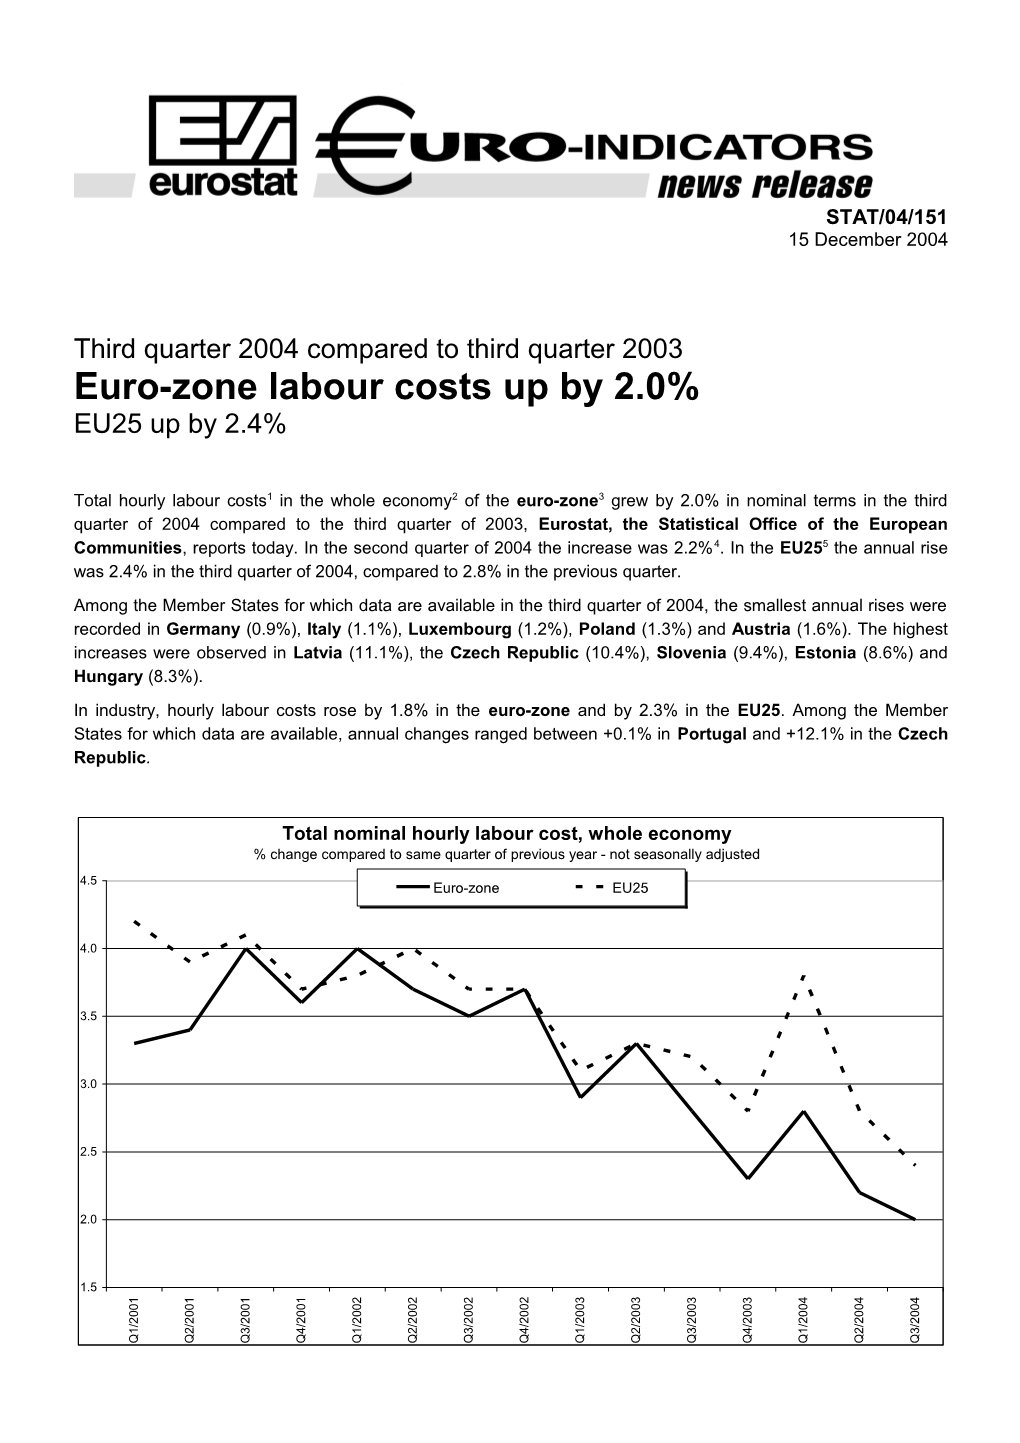 Third Quarter 2004 Compared to Third Quarter 2003 Euro-Zone Labour Costs up by 2.0% EU25